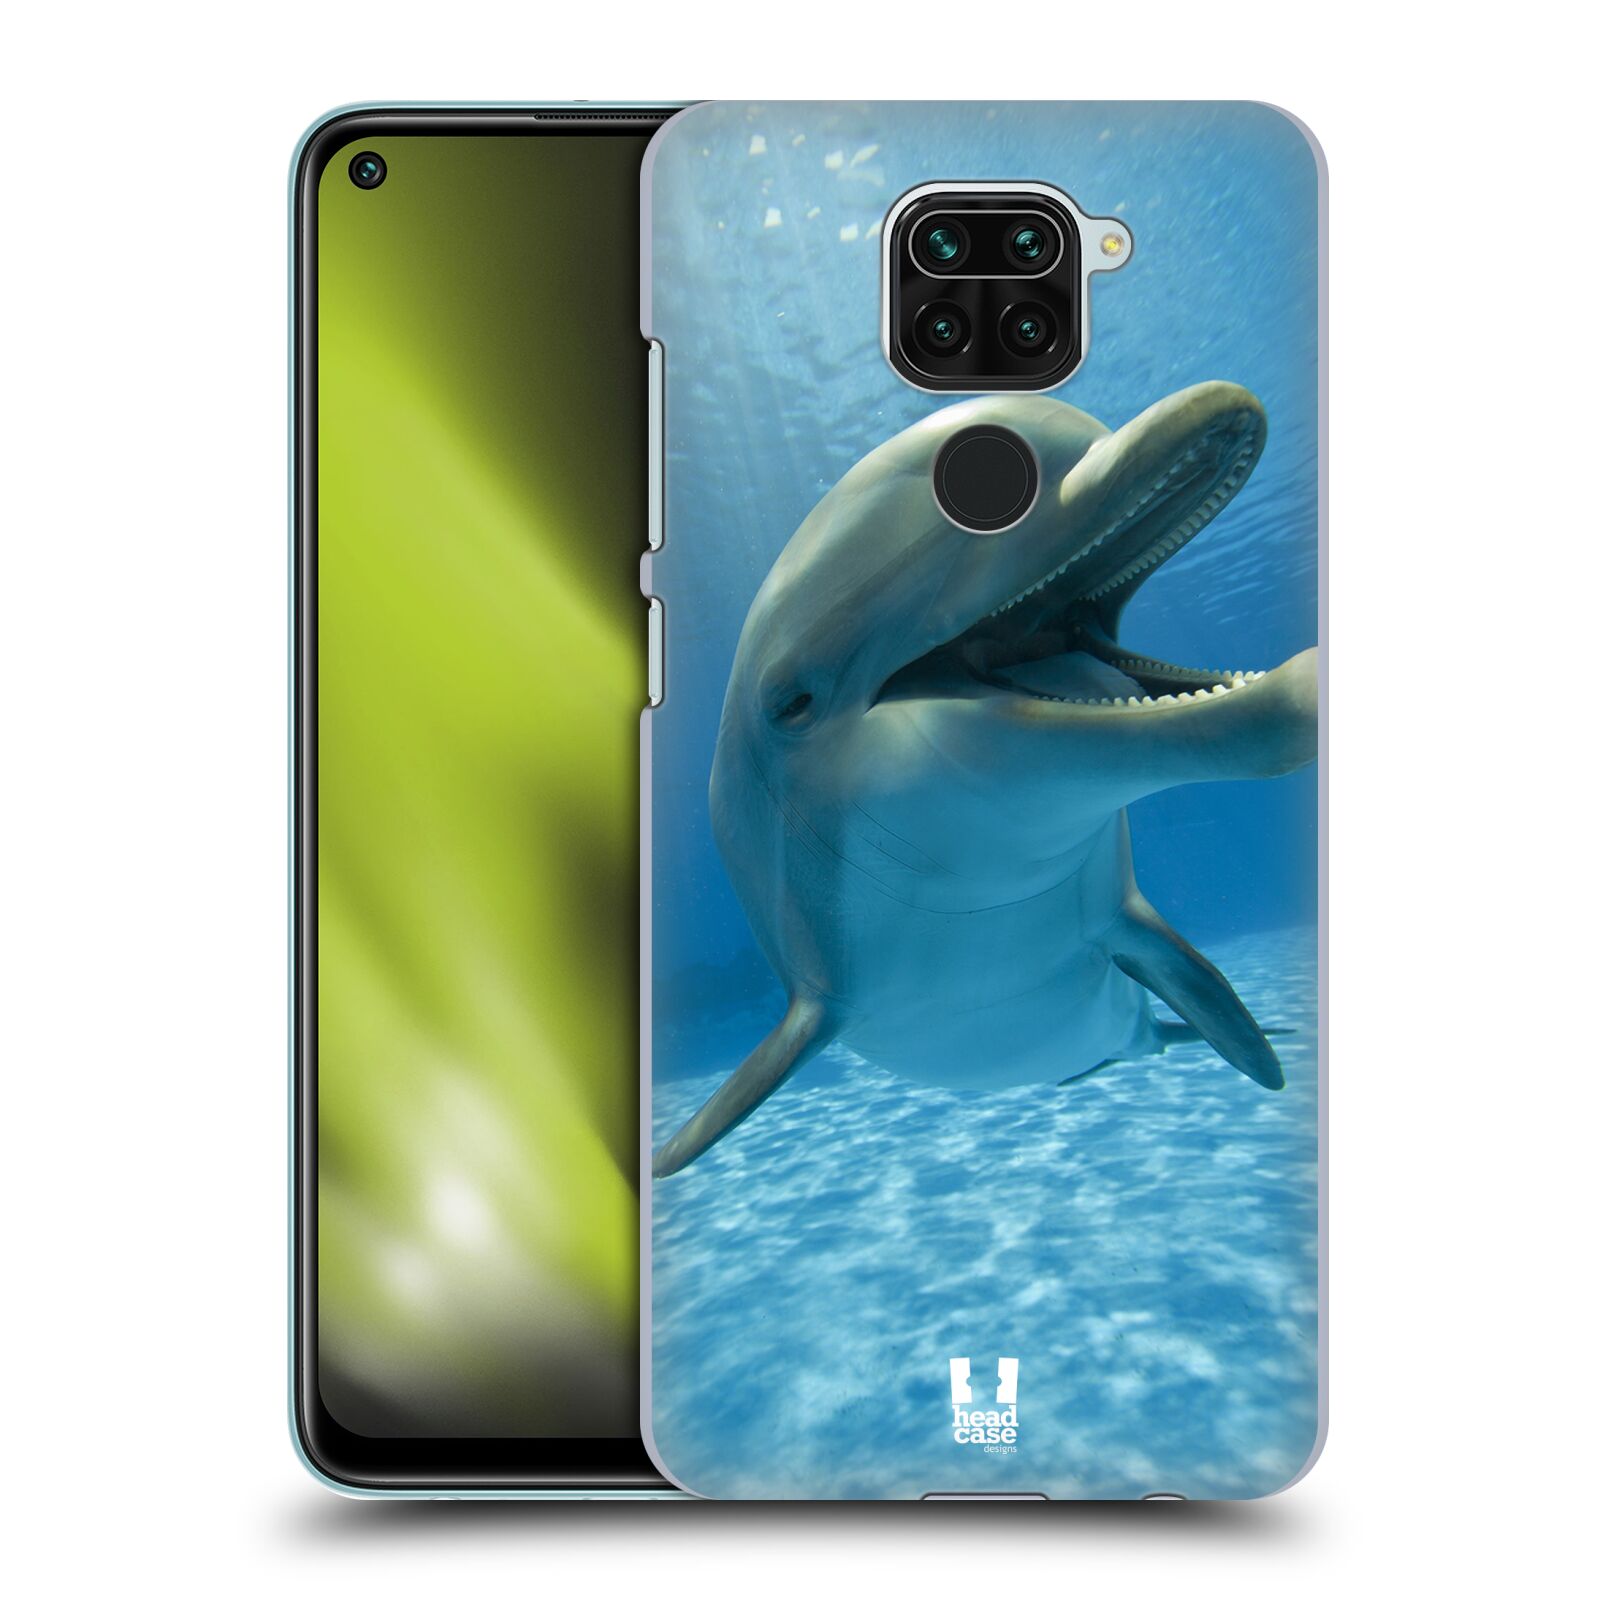 Zadní obal pro mobil Xiaomi Redmi Note 9 - HEAD CASE - Svět zvířat delfín v moři